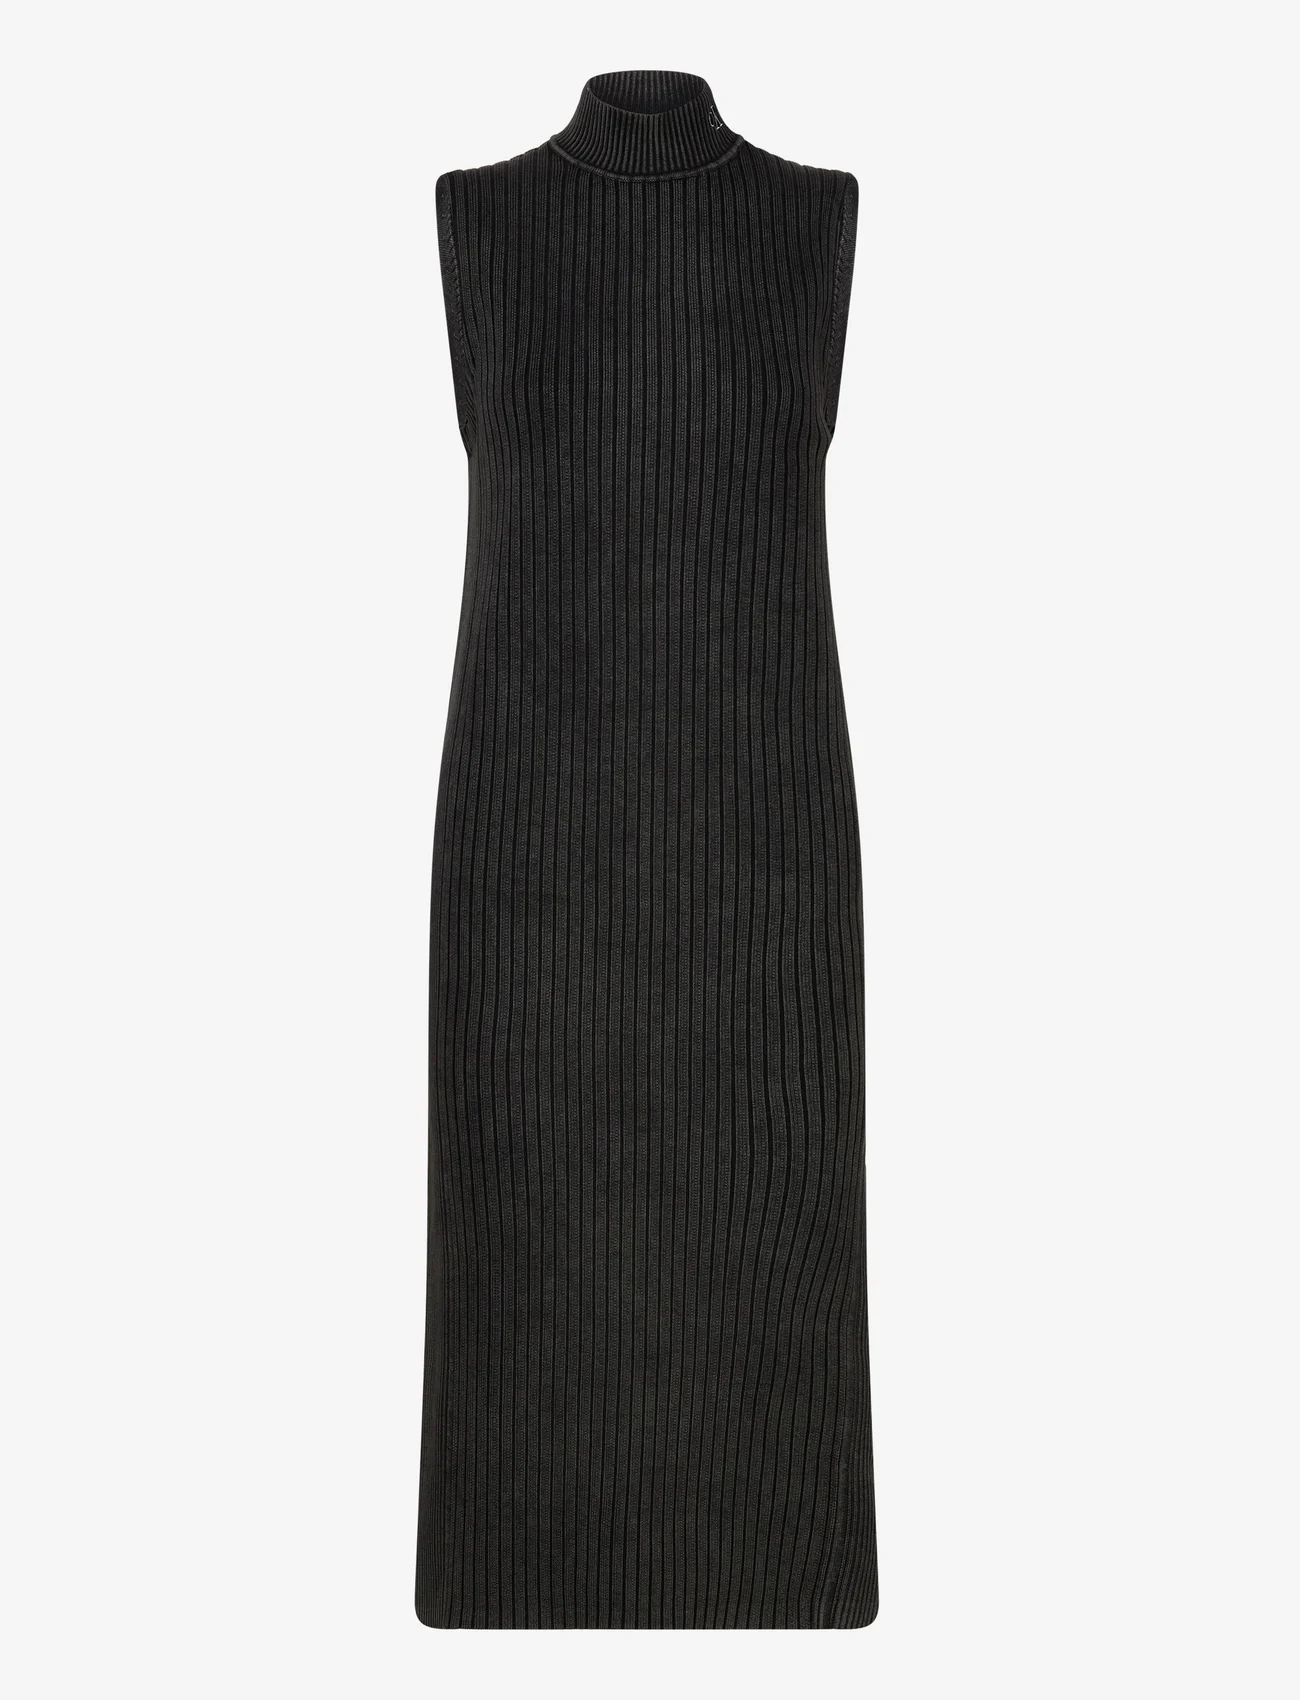 Calvin Klein Jeans - WASHED LONG SWEATER DRESS - stickade klänningar - ck black - 0